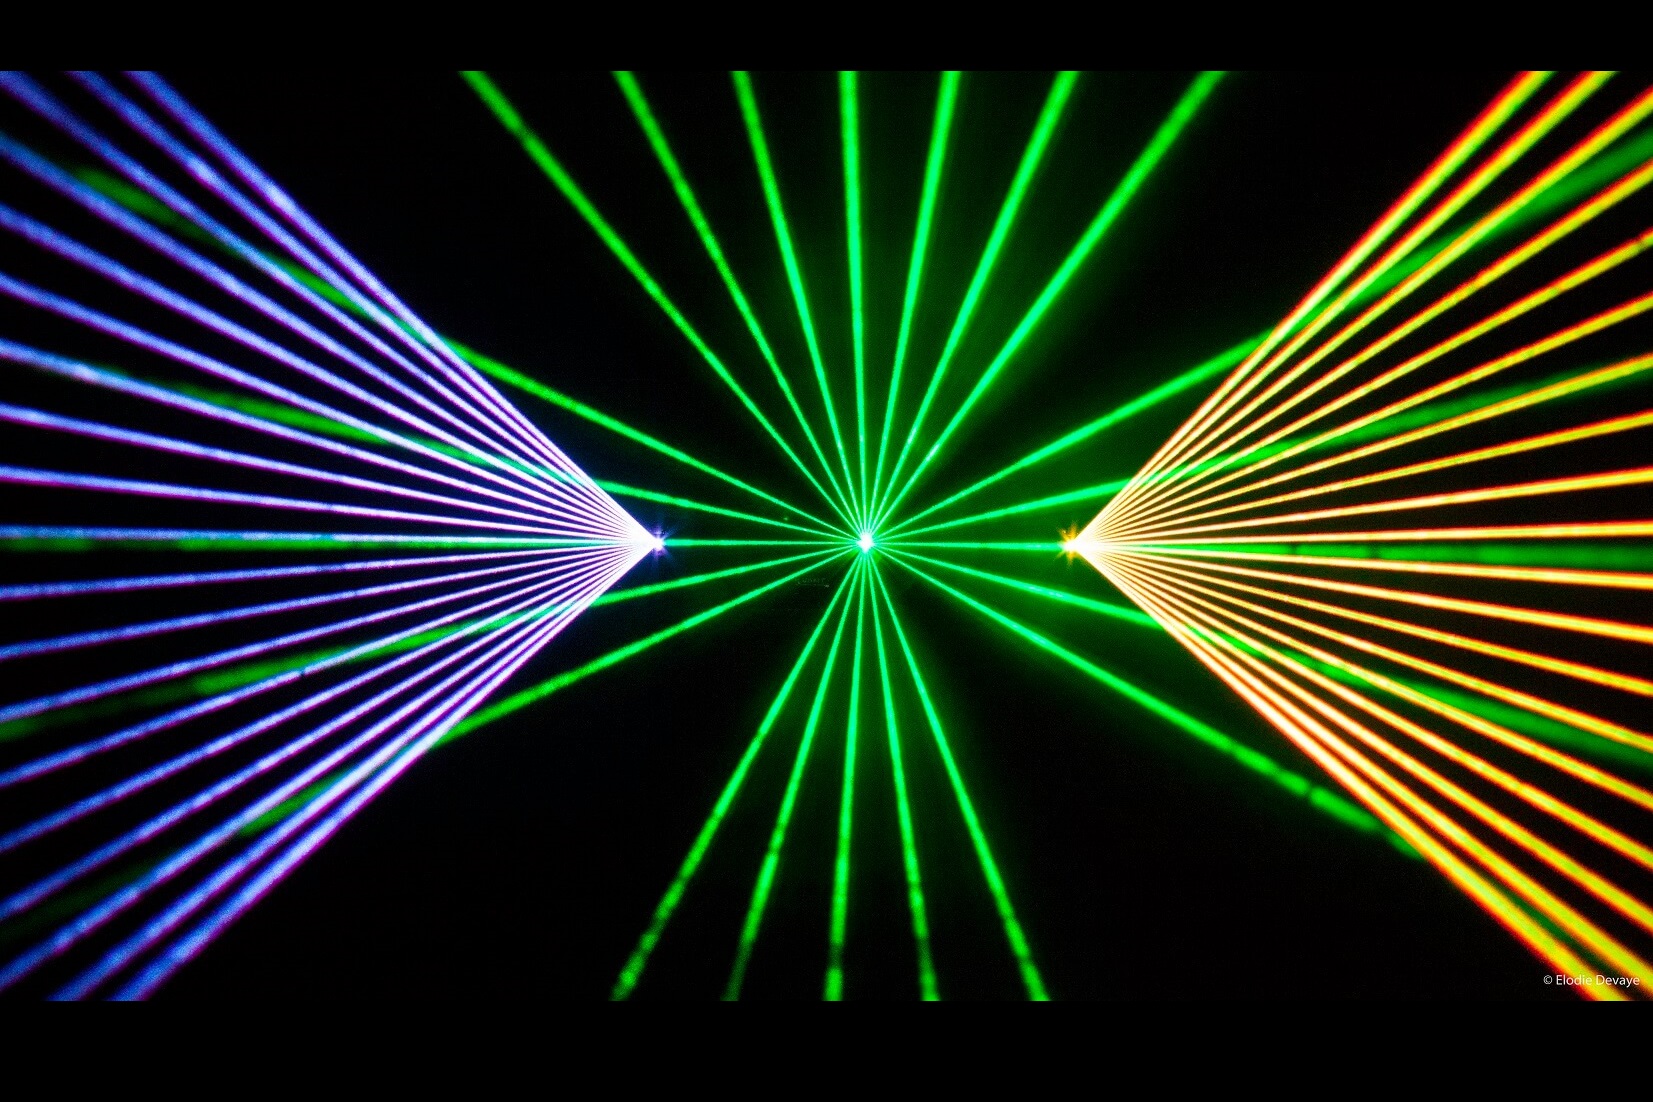 Laser Image